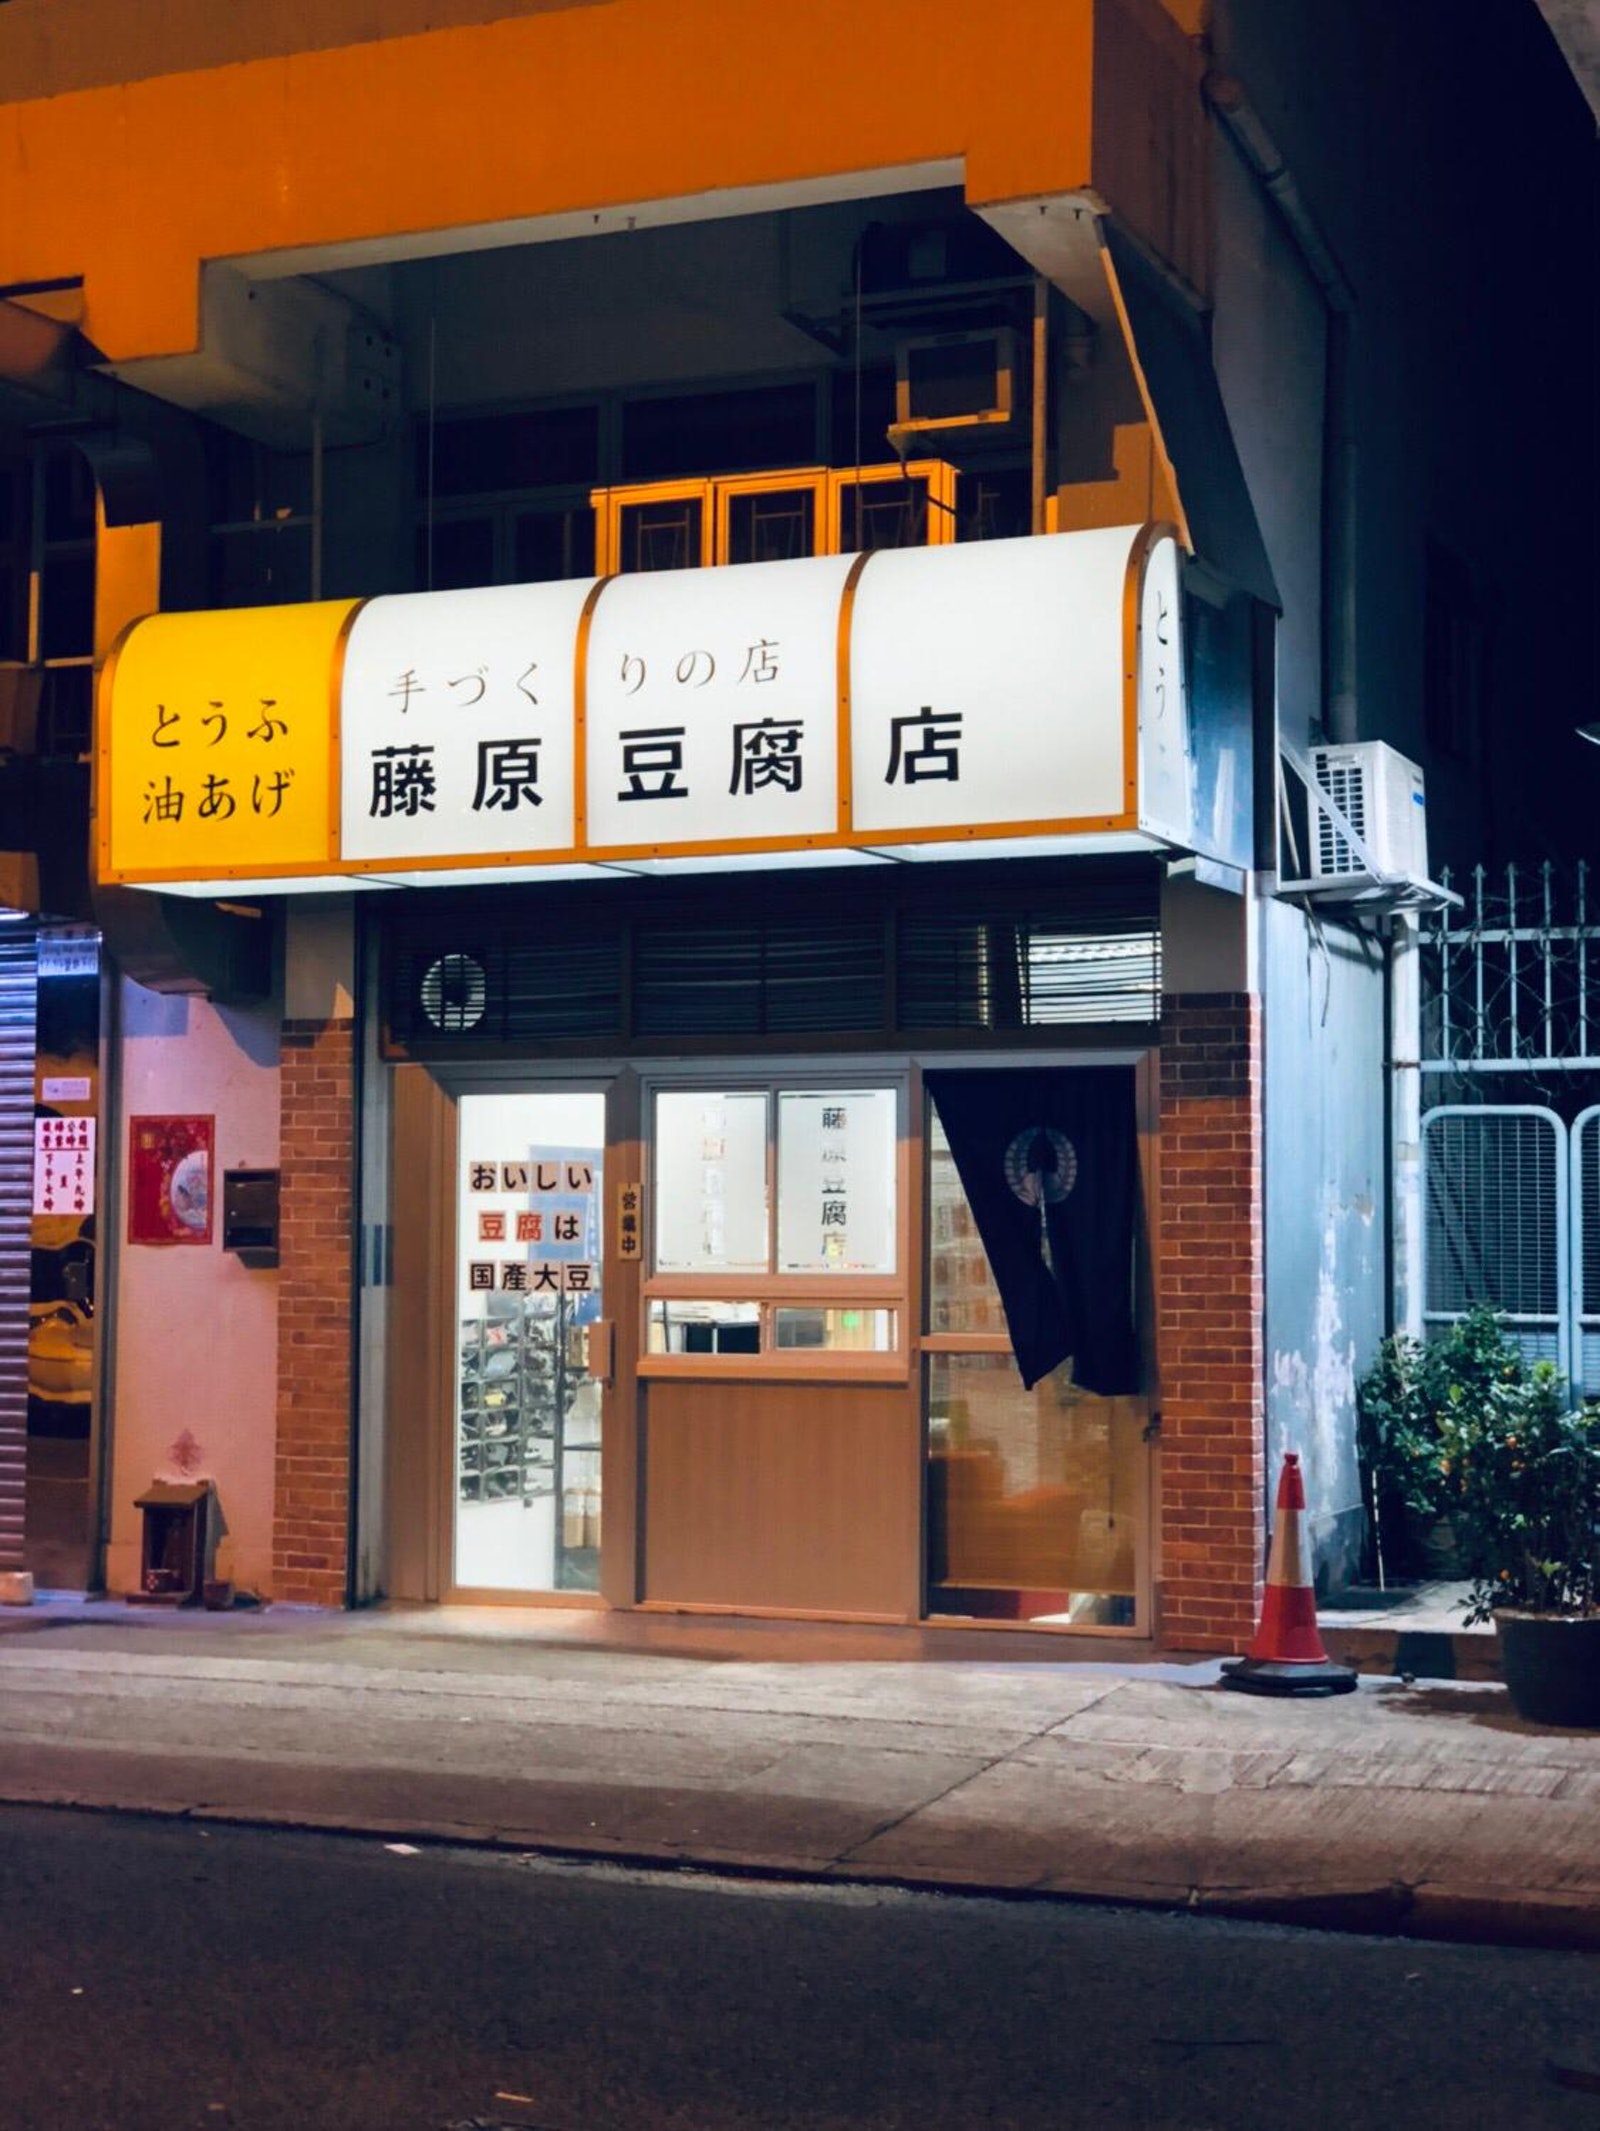 世界100 還原 藤原豆腐店 只剩這一間 老闆笑 店內沒賣豆腐 爆新聞